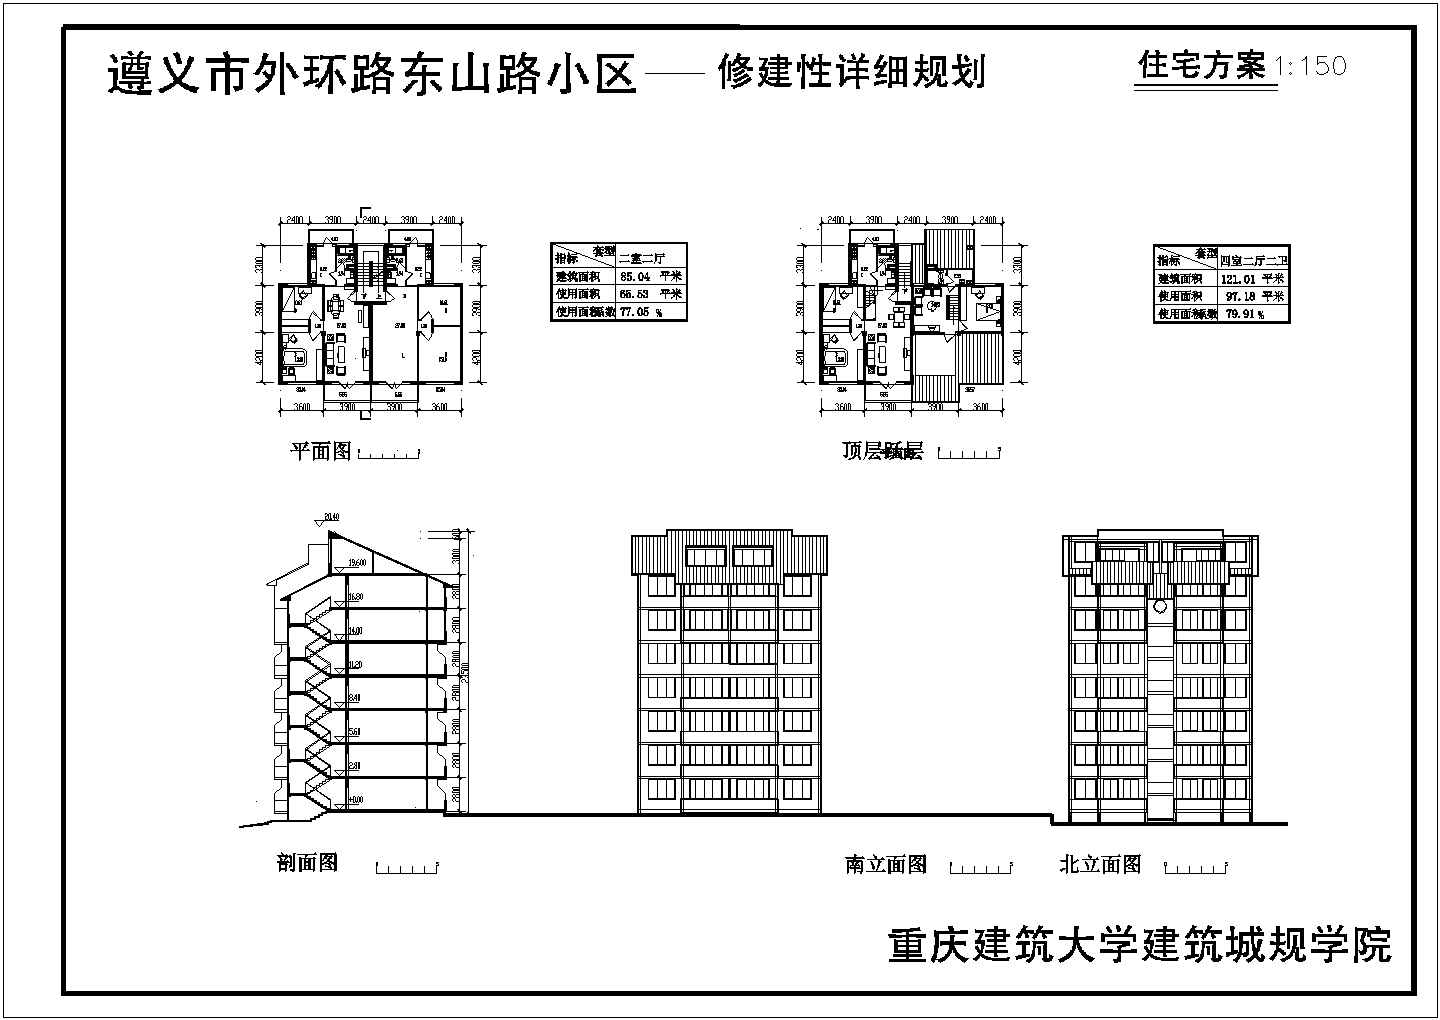 江西省南昌市某装修公司设计某多层住宅修建详细图纸dwg格式